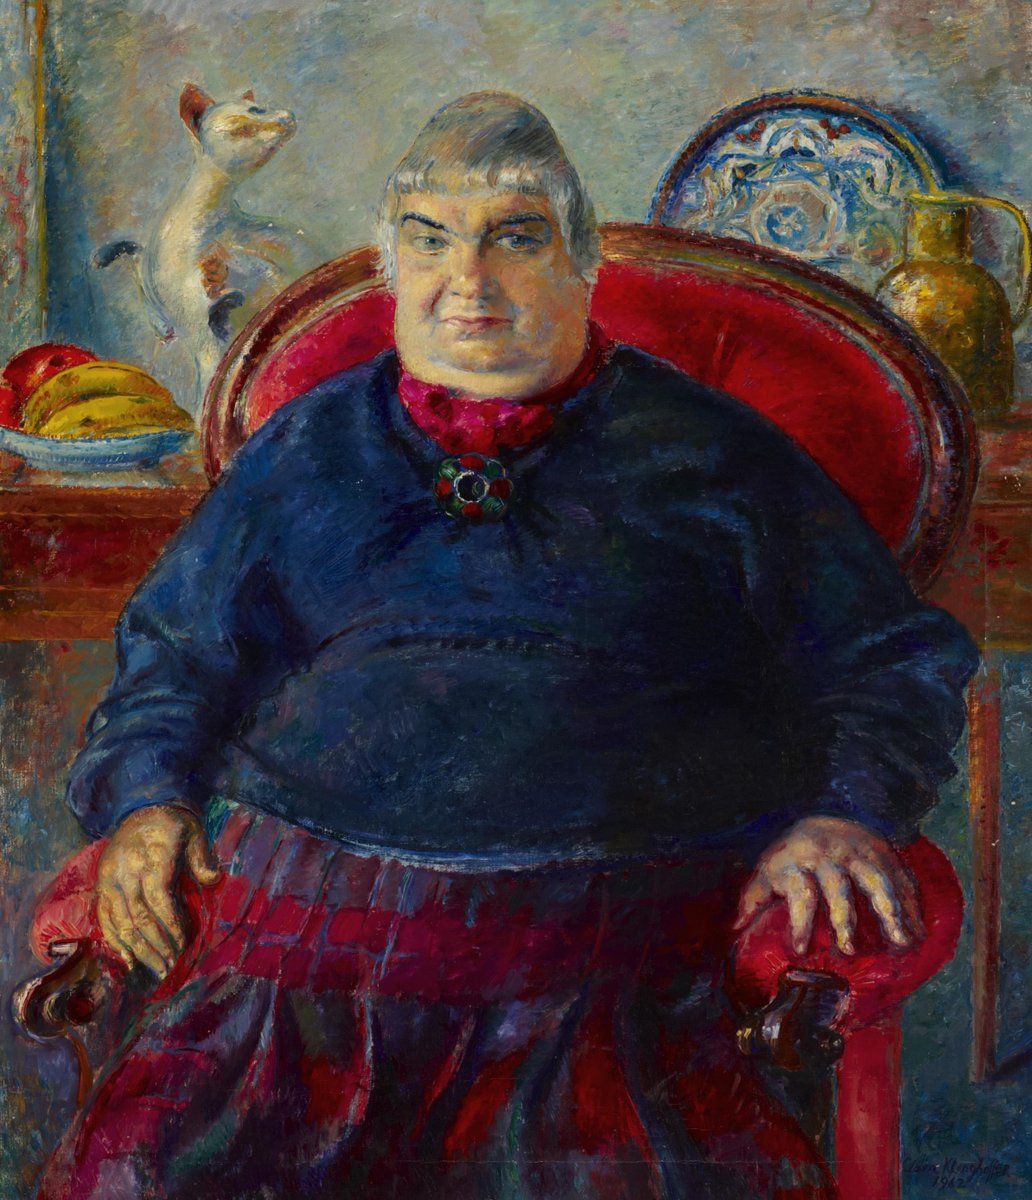 Ben Uri Gallery & Museum on Twitter: "Klinghoffer's 'Portrait of ...